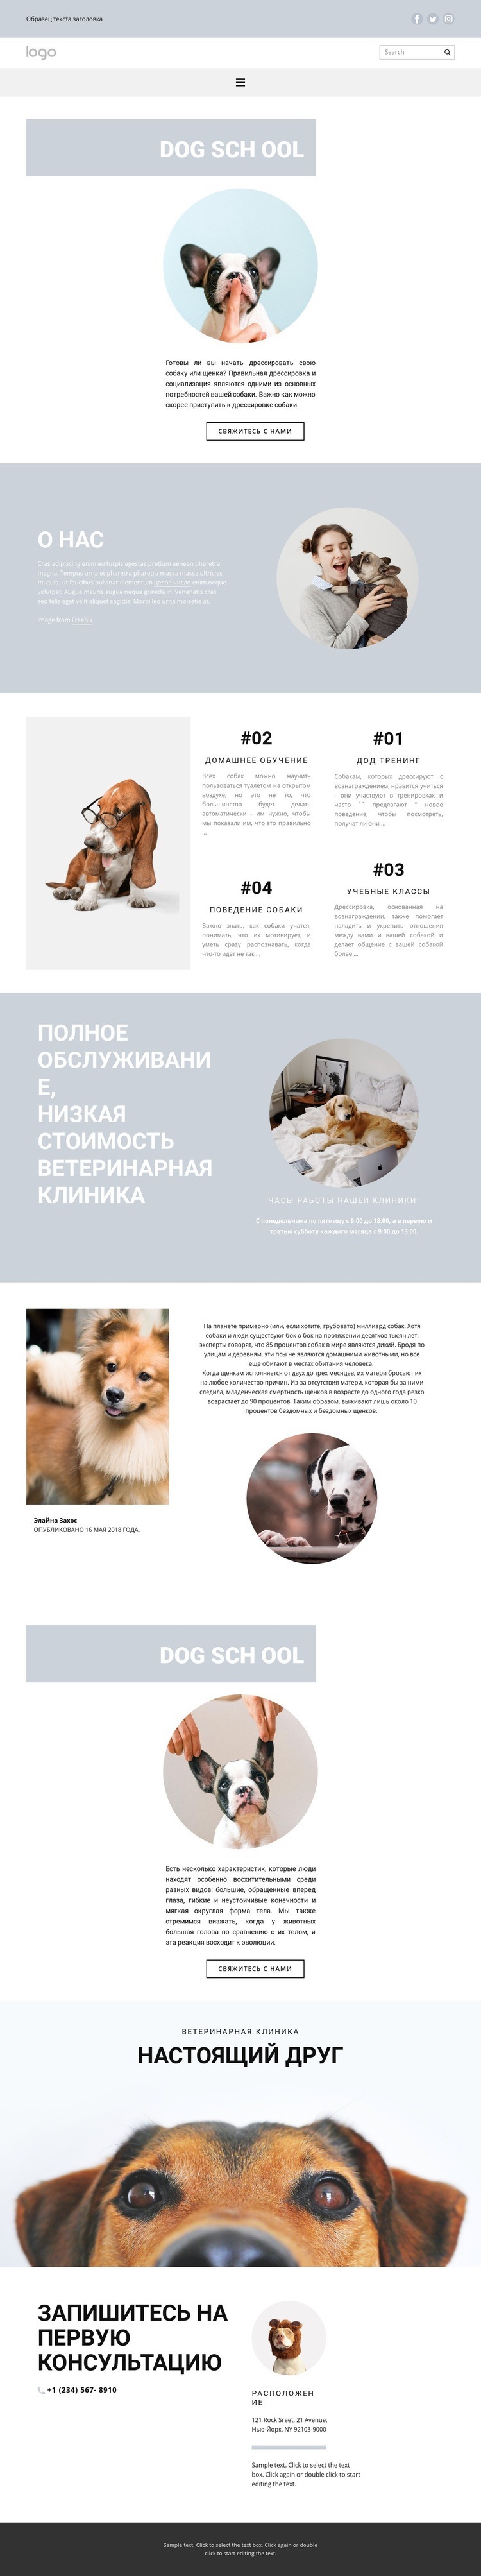 Разведение собак HTML5 шаблон